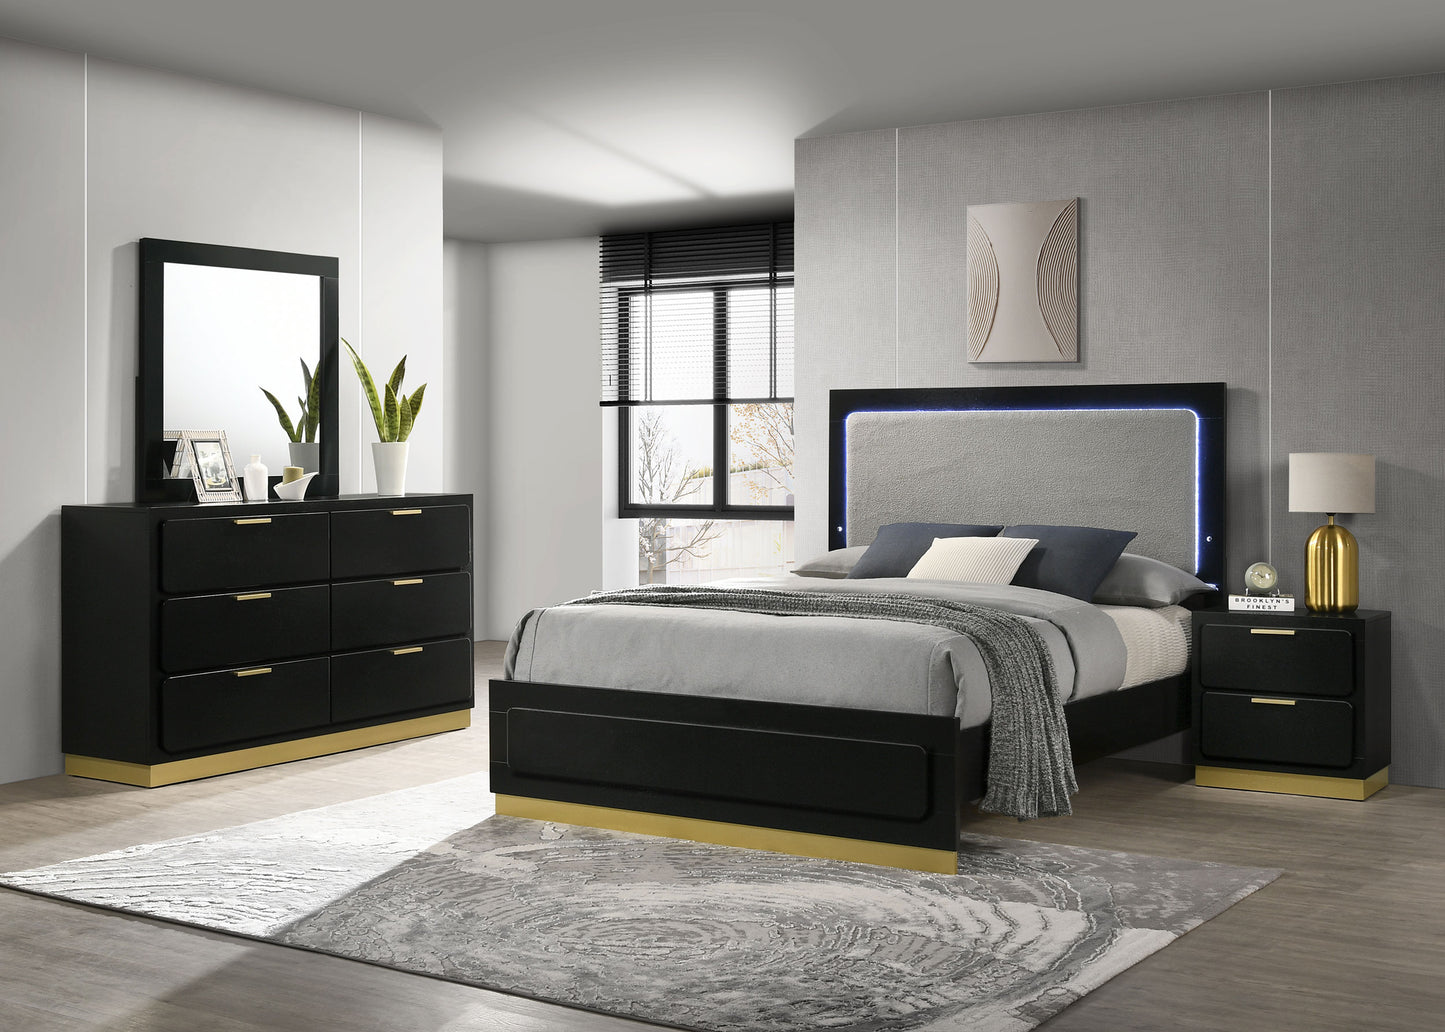 Caraway 4-piece Queen Bedroom Set Black